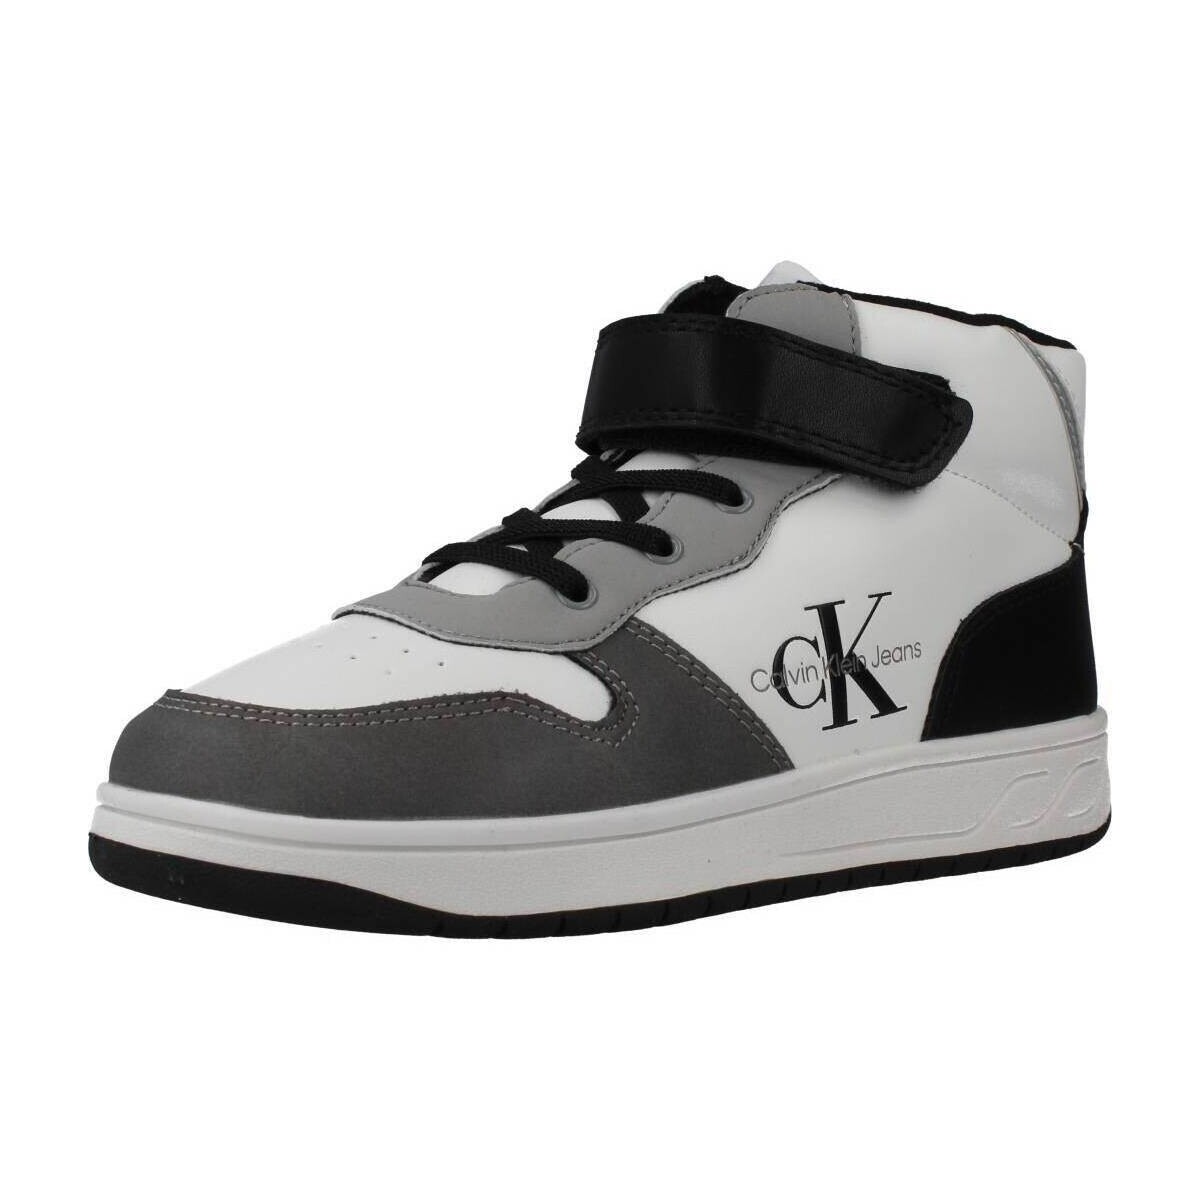 Skor Pojkar Sneakers Calvin Klein Jeans V1X980331 Vit